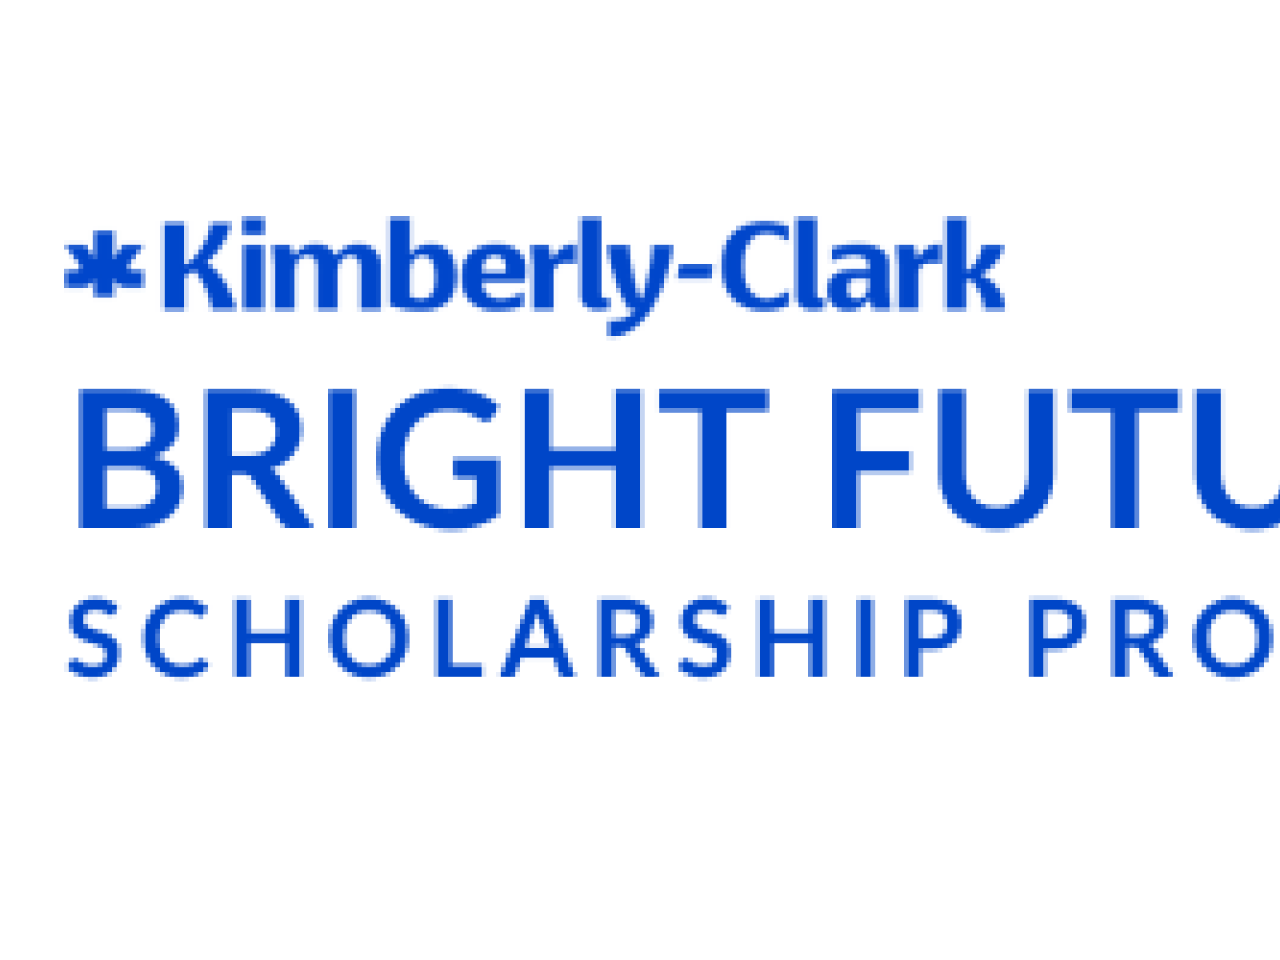 Kimberly-Clark Bright Futures Scholarship Program.